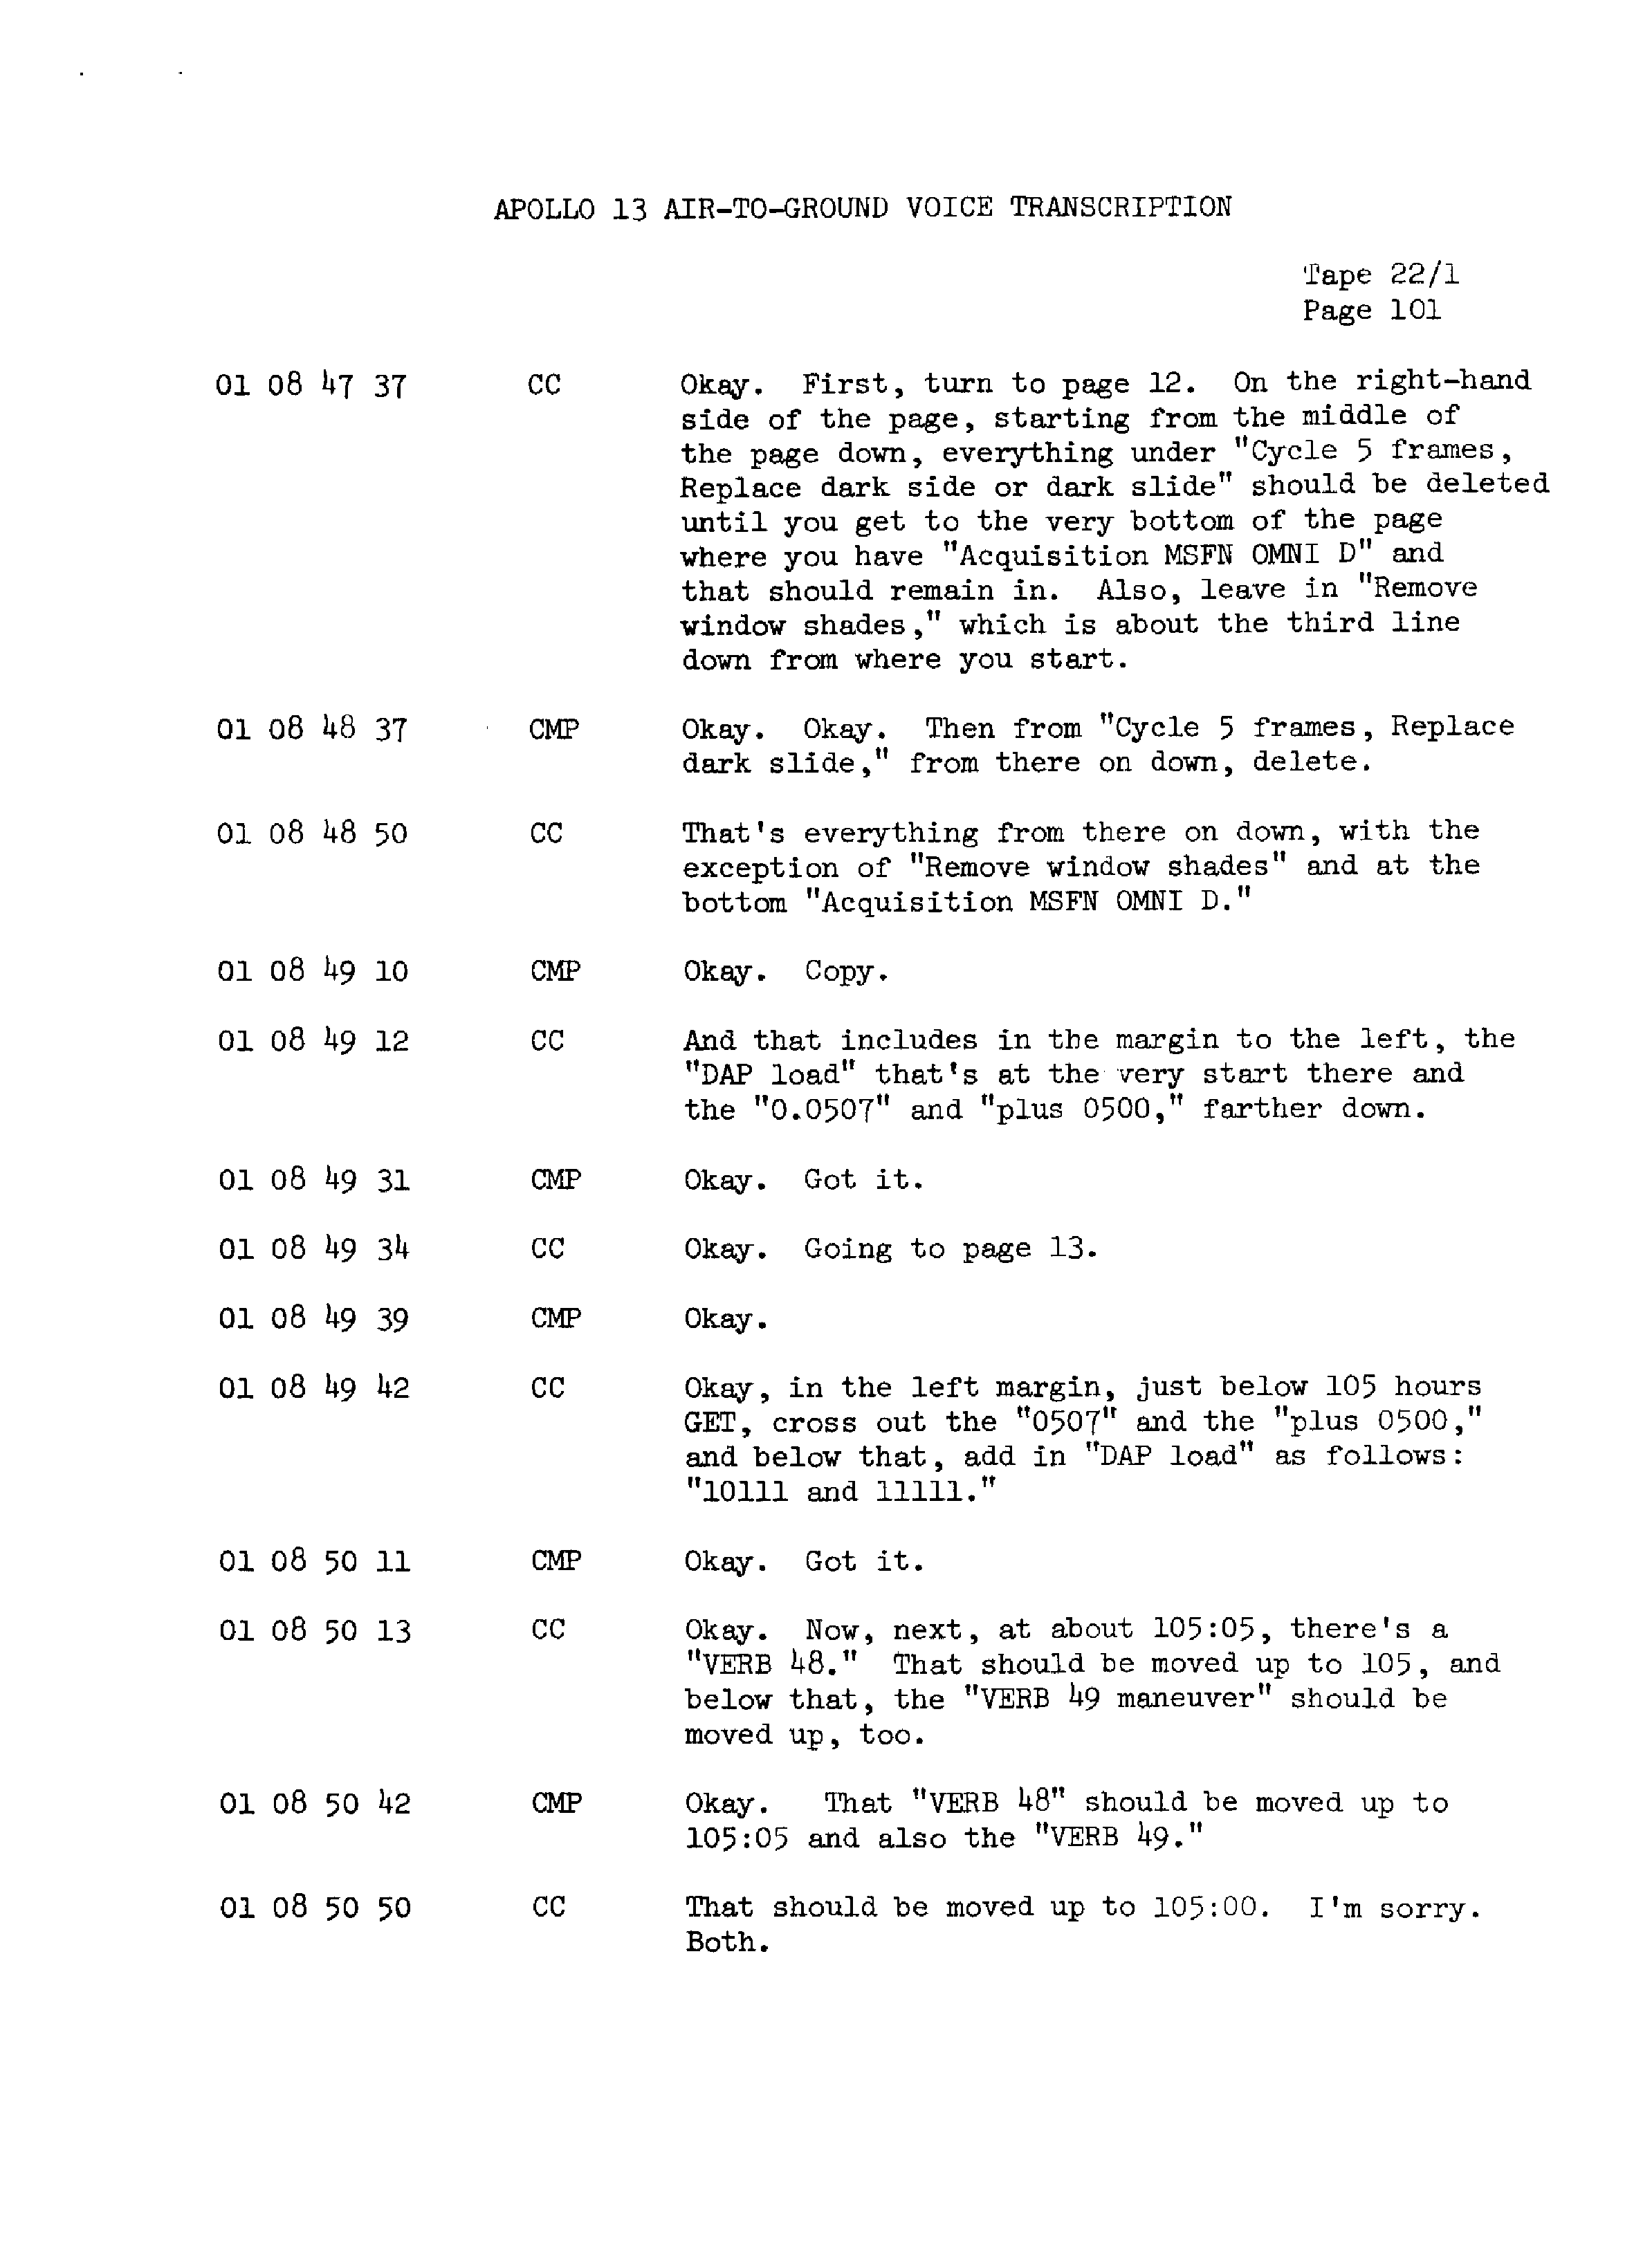 Page 108 of Apollo 13’s original transcript